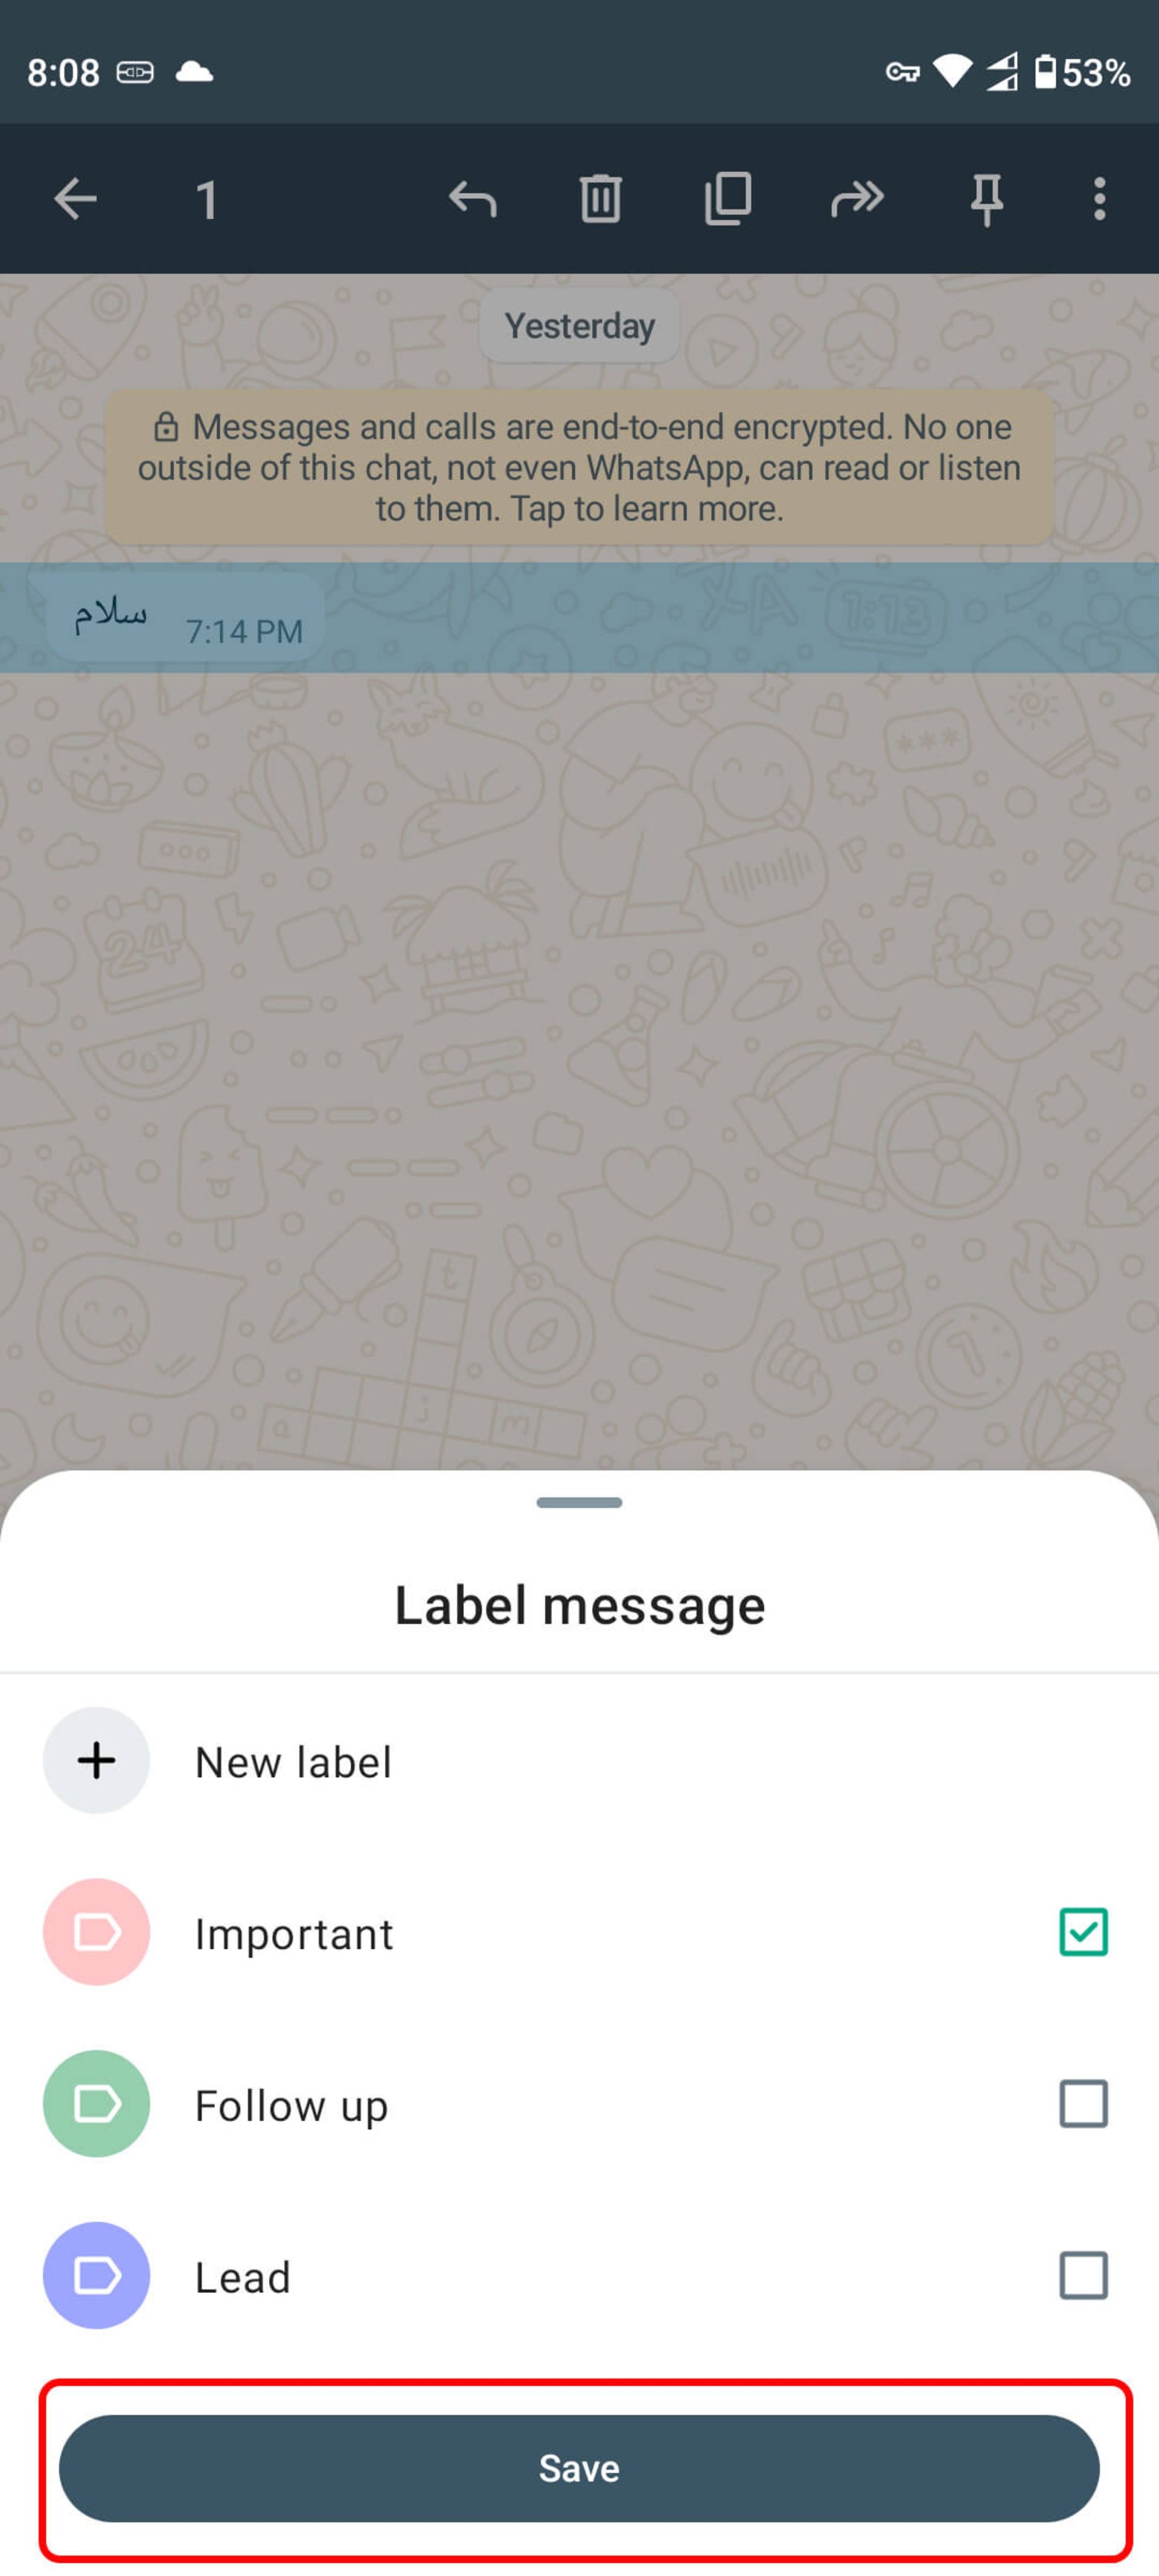 ذخیره برچسب پیام مورد نظر (Label message)